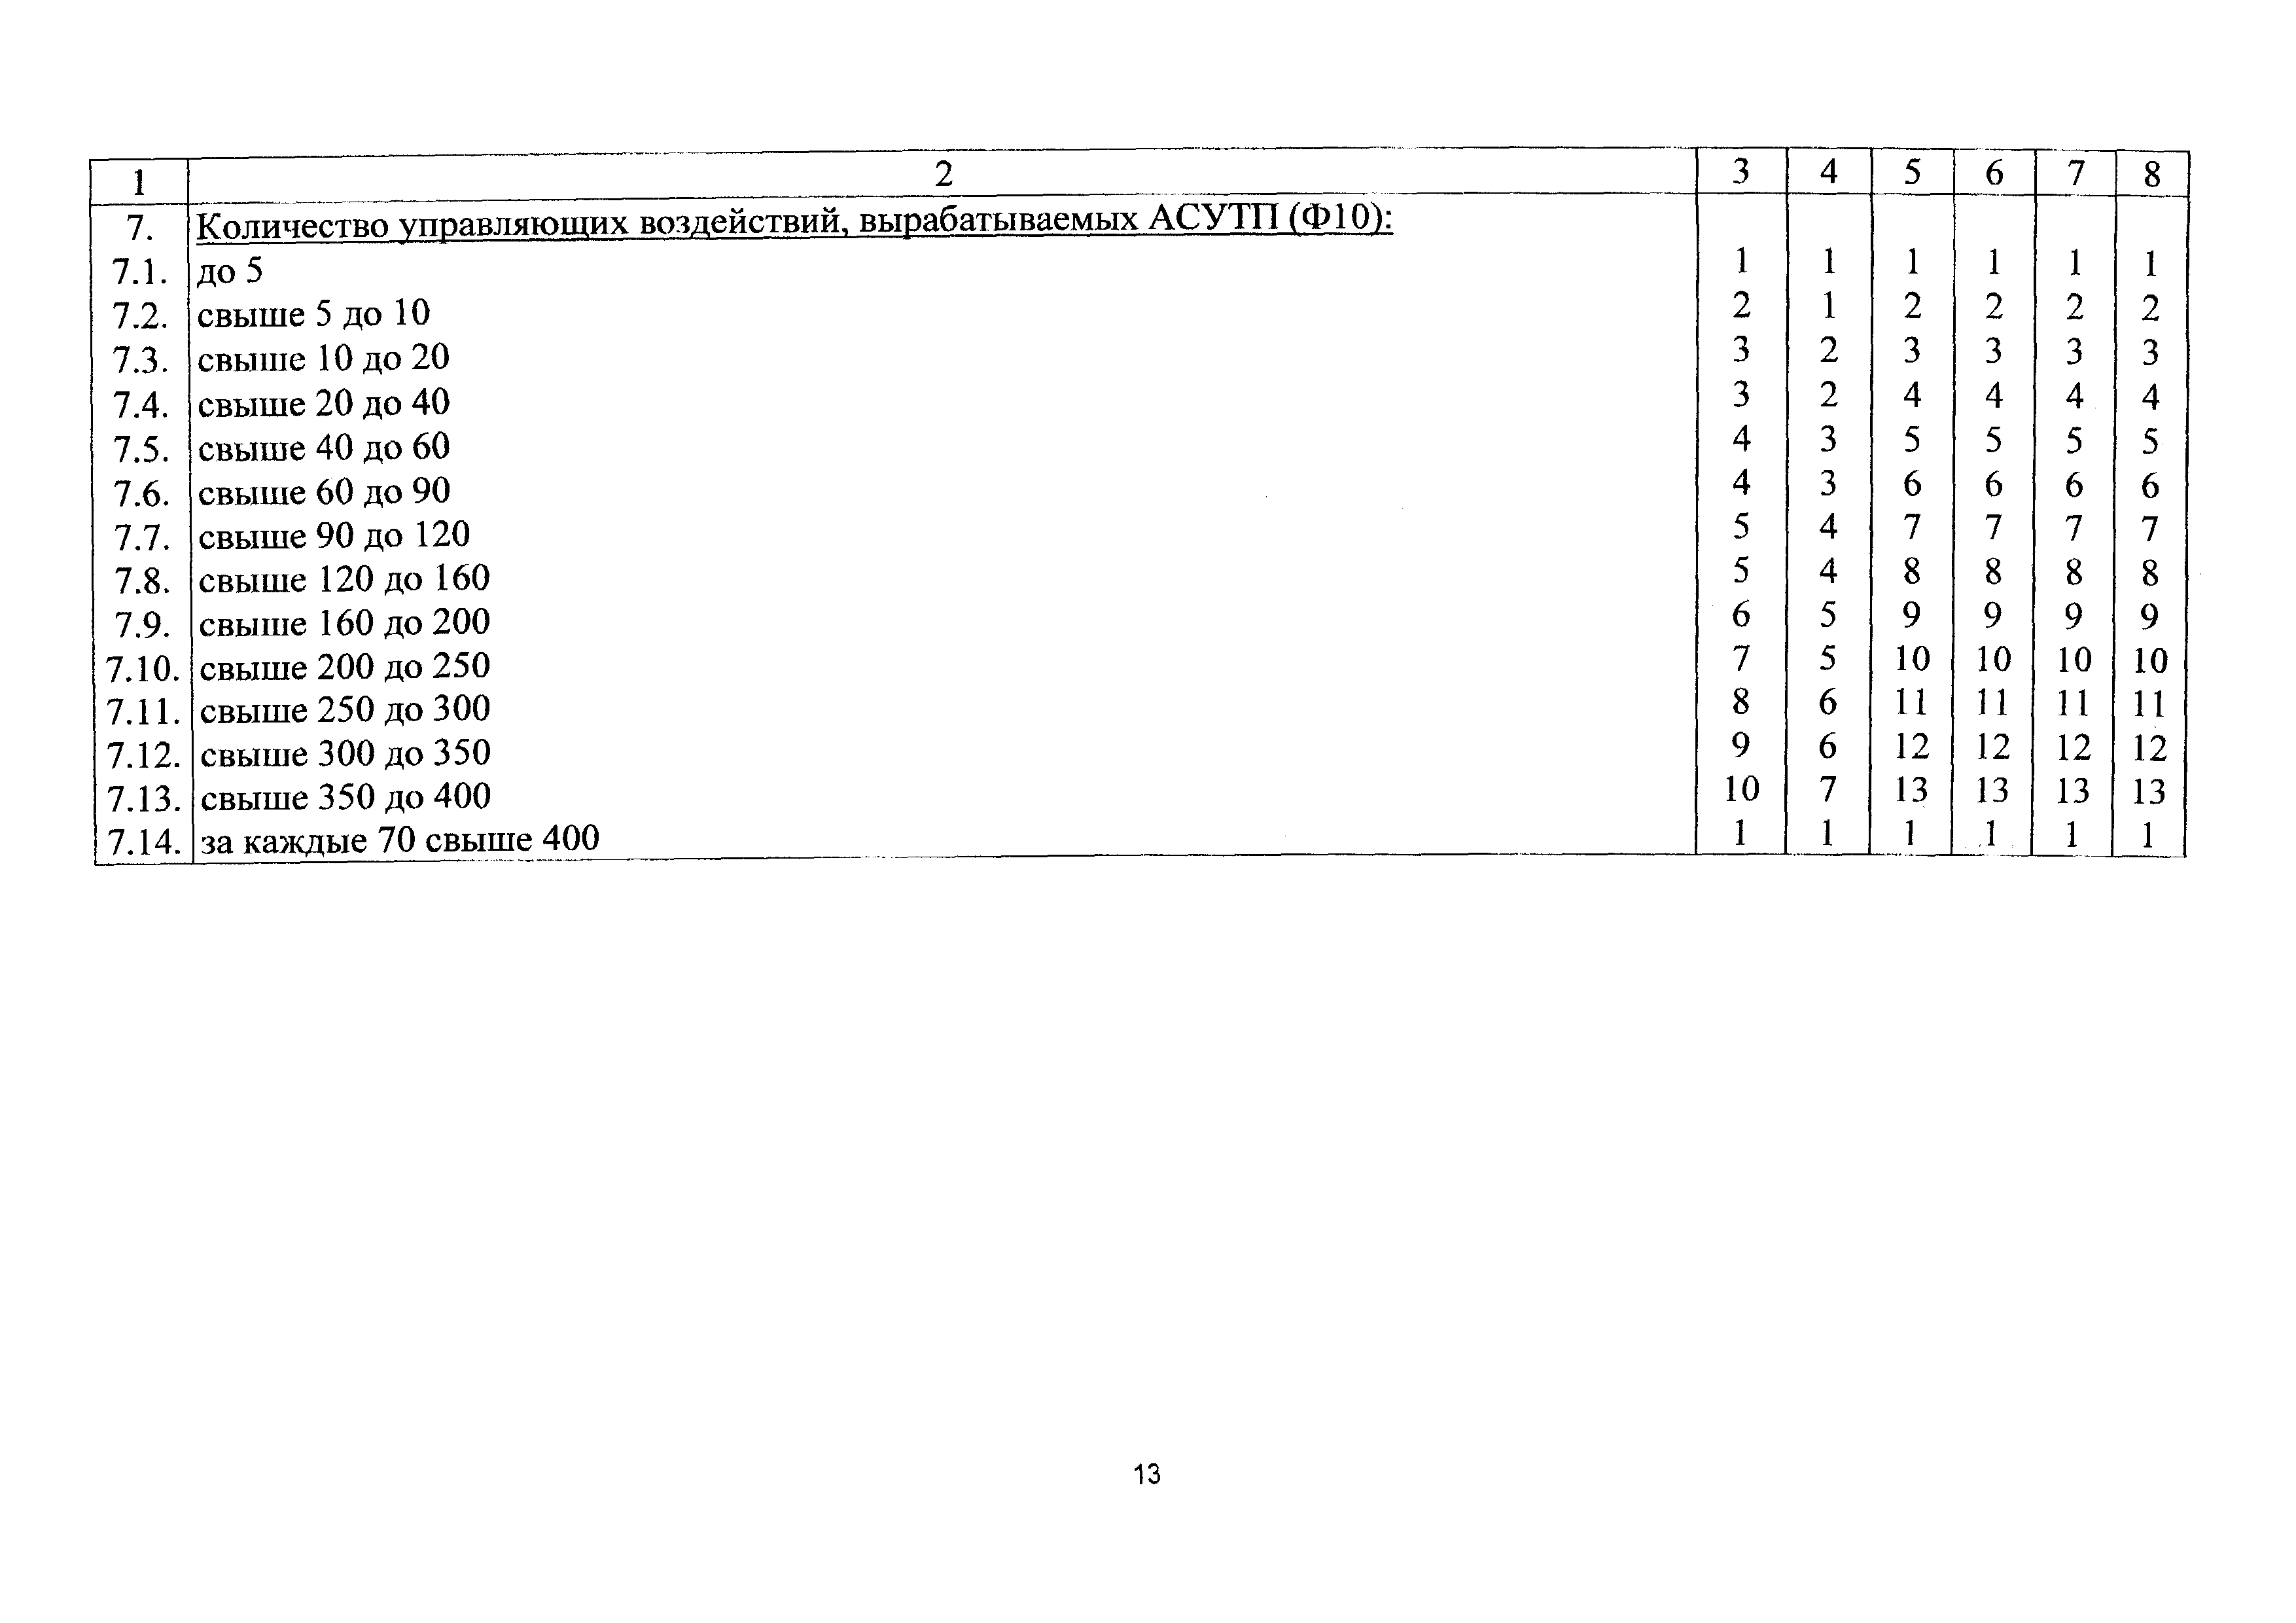 СБЦП 81-2001-22